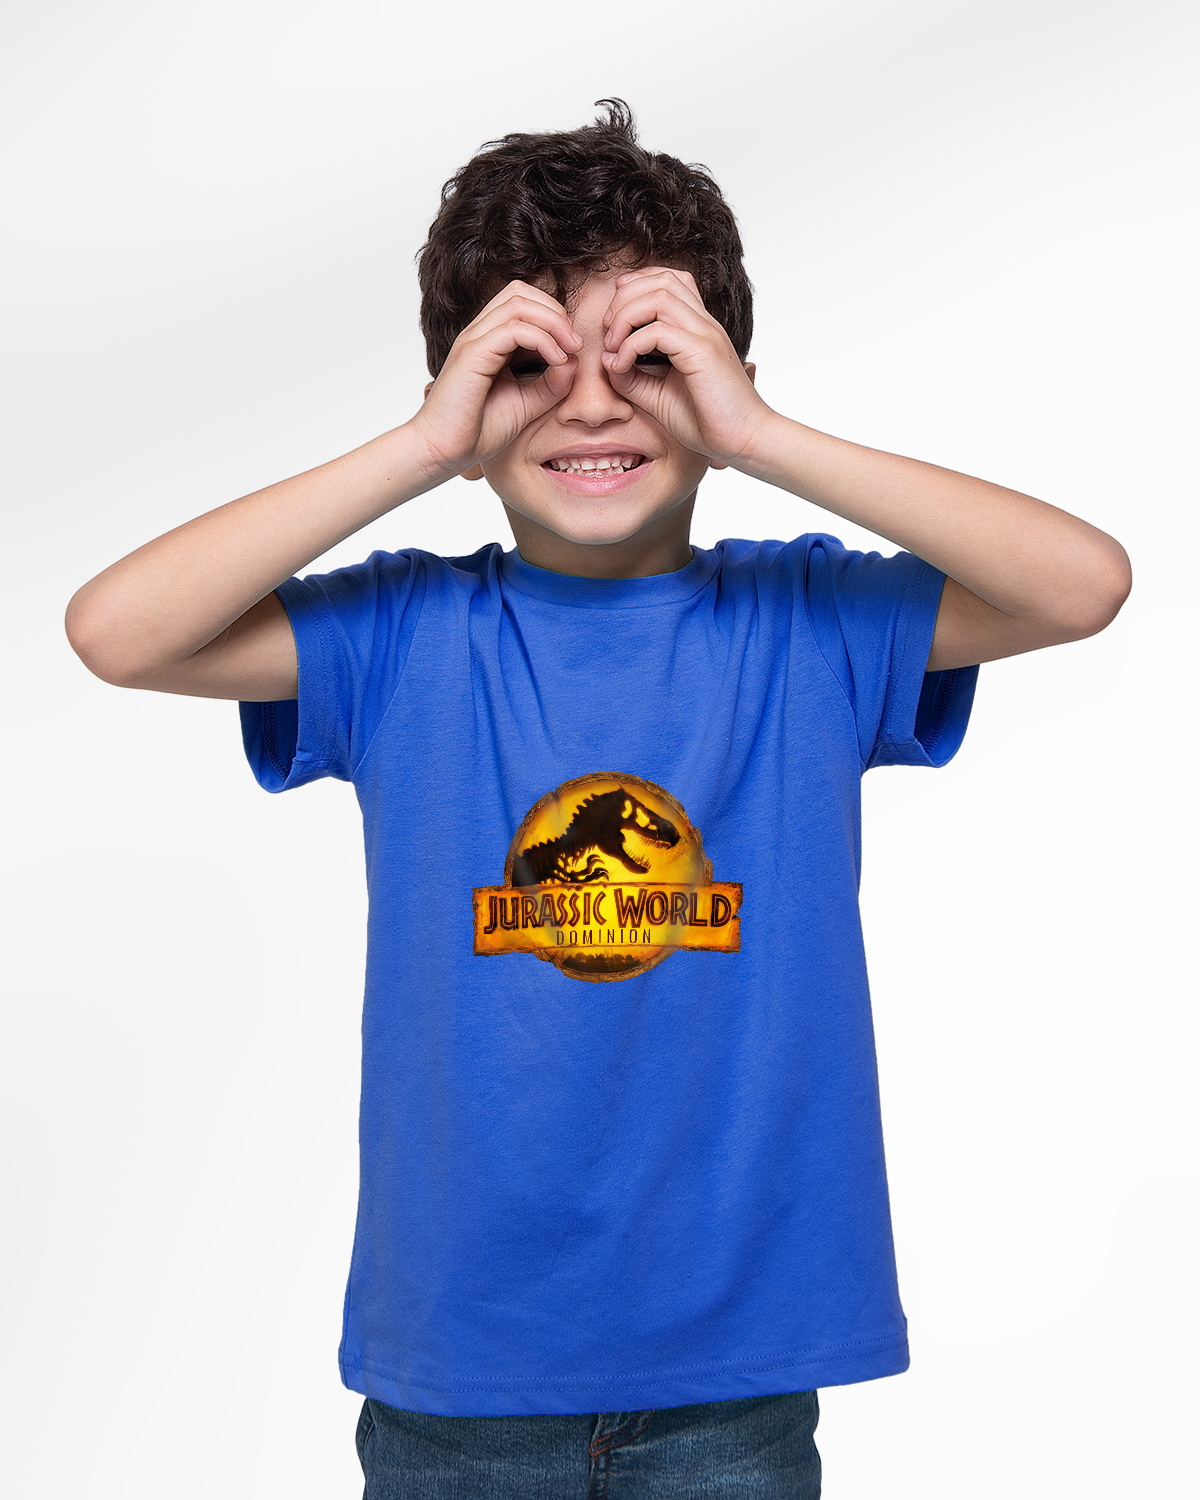 T-shirt For Boys (Jurassic World)